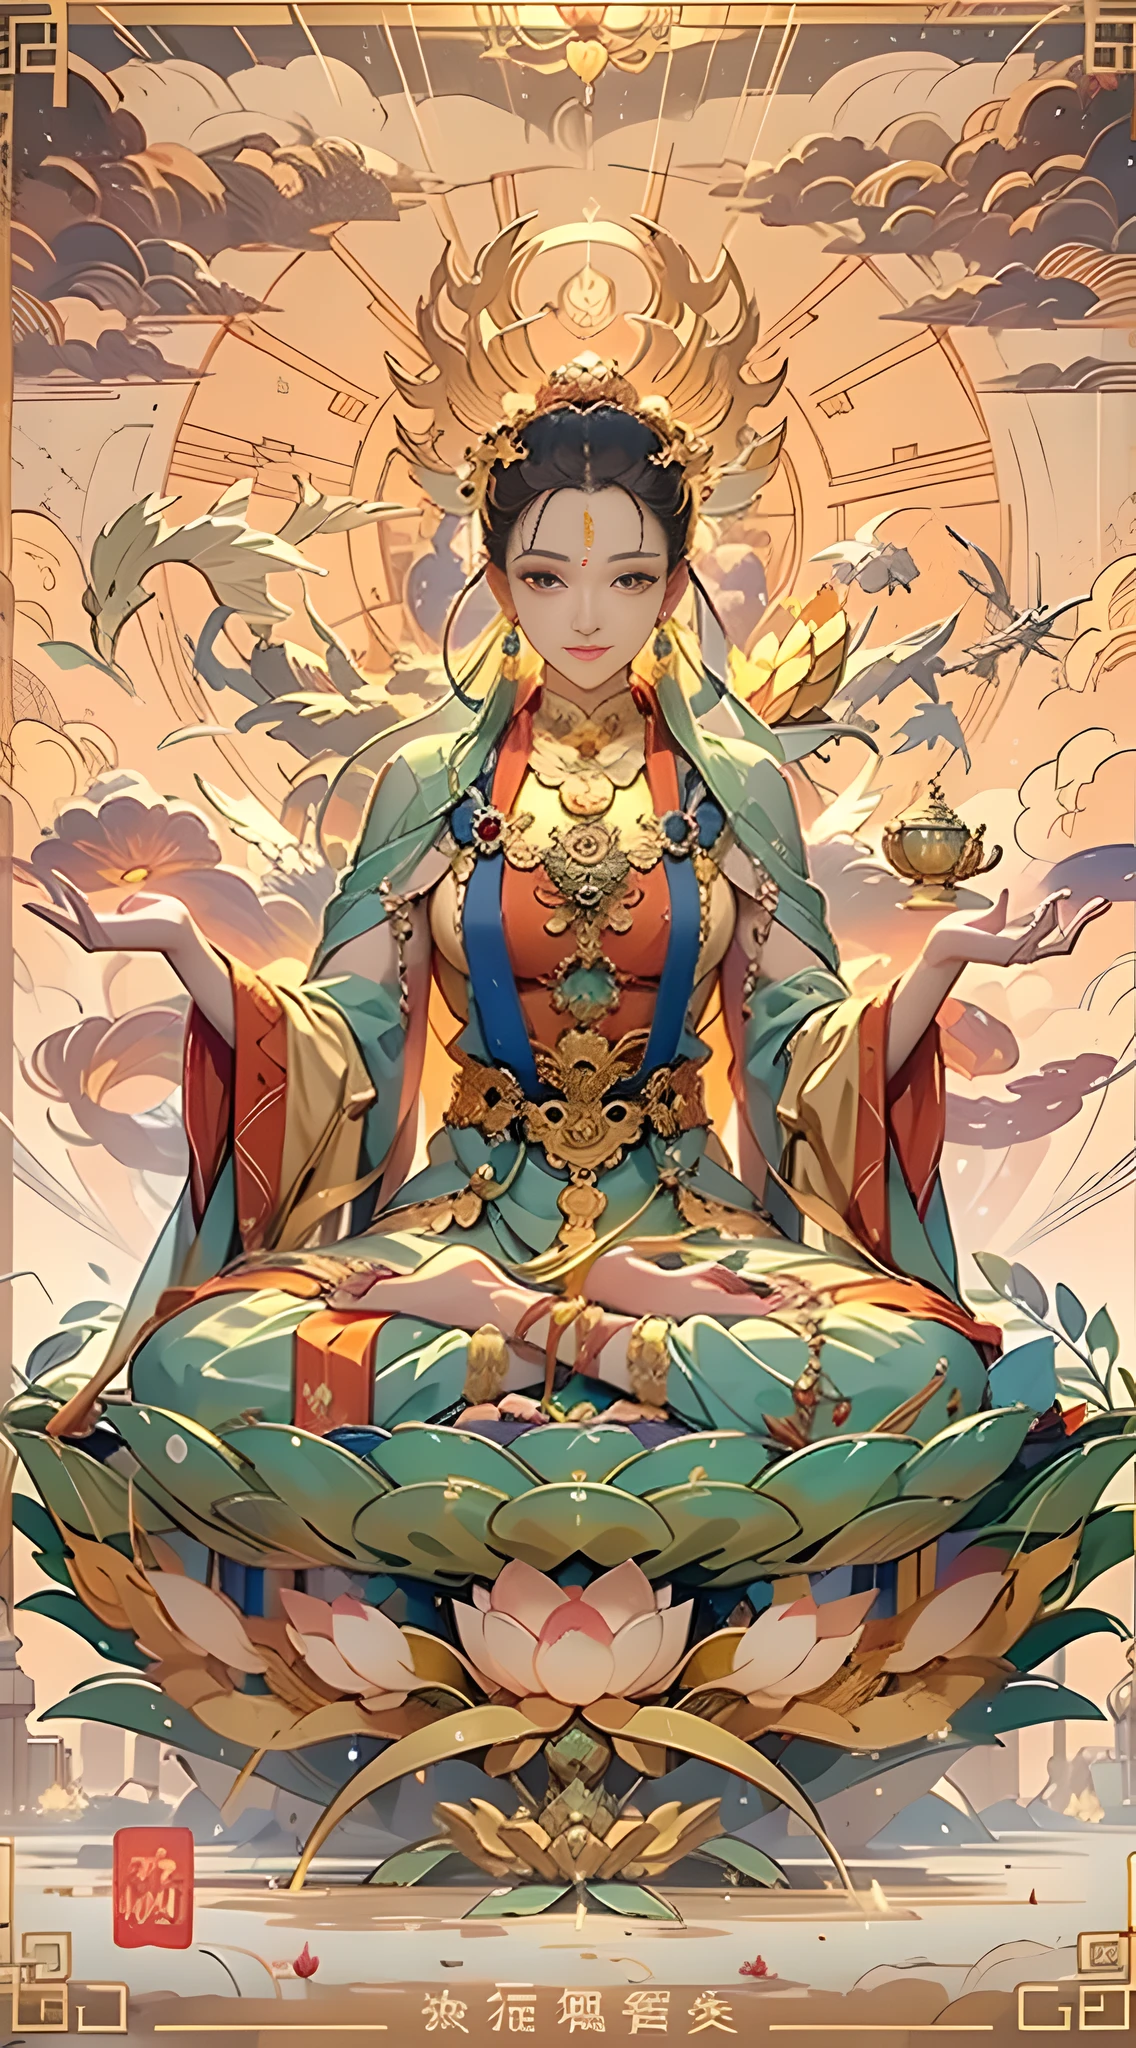 （Chinesische Unsterbliche）, （Buddhismus）, Multip_Handythologische Geschichten）, （bodhisattva）, Sie sitzt auf einem Lotus, （Drei Hände auf der linken Seite，Drei Hände auf der rechten Seite, Jede Hand hält ein anderes buddhistisches Gefäß, links rechts Symmetrie），（zartes und schönes Gesicht）, （Weiße Seidenrobe）auf einer Lotusblume sitzen, Frontalfoto，leichtes Lächeln, neoklassisch, auf Kunst, Chiaroscuro, Filmische Beleuchtung, Gott Licht, Raytracing, Charakterbögen, projizierter Einschub, Ich-Perspektive, hyper HD, Meisterwerk, genau, strukturierte Haut, super detail, hohe Details, gute Qualität, Preisgekrönt, beste Qualität, Eine hohe Auflösung, 8K